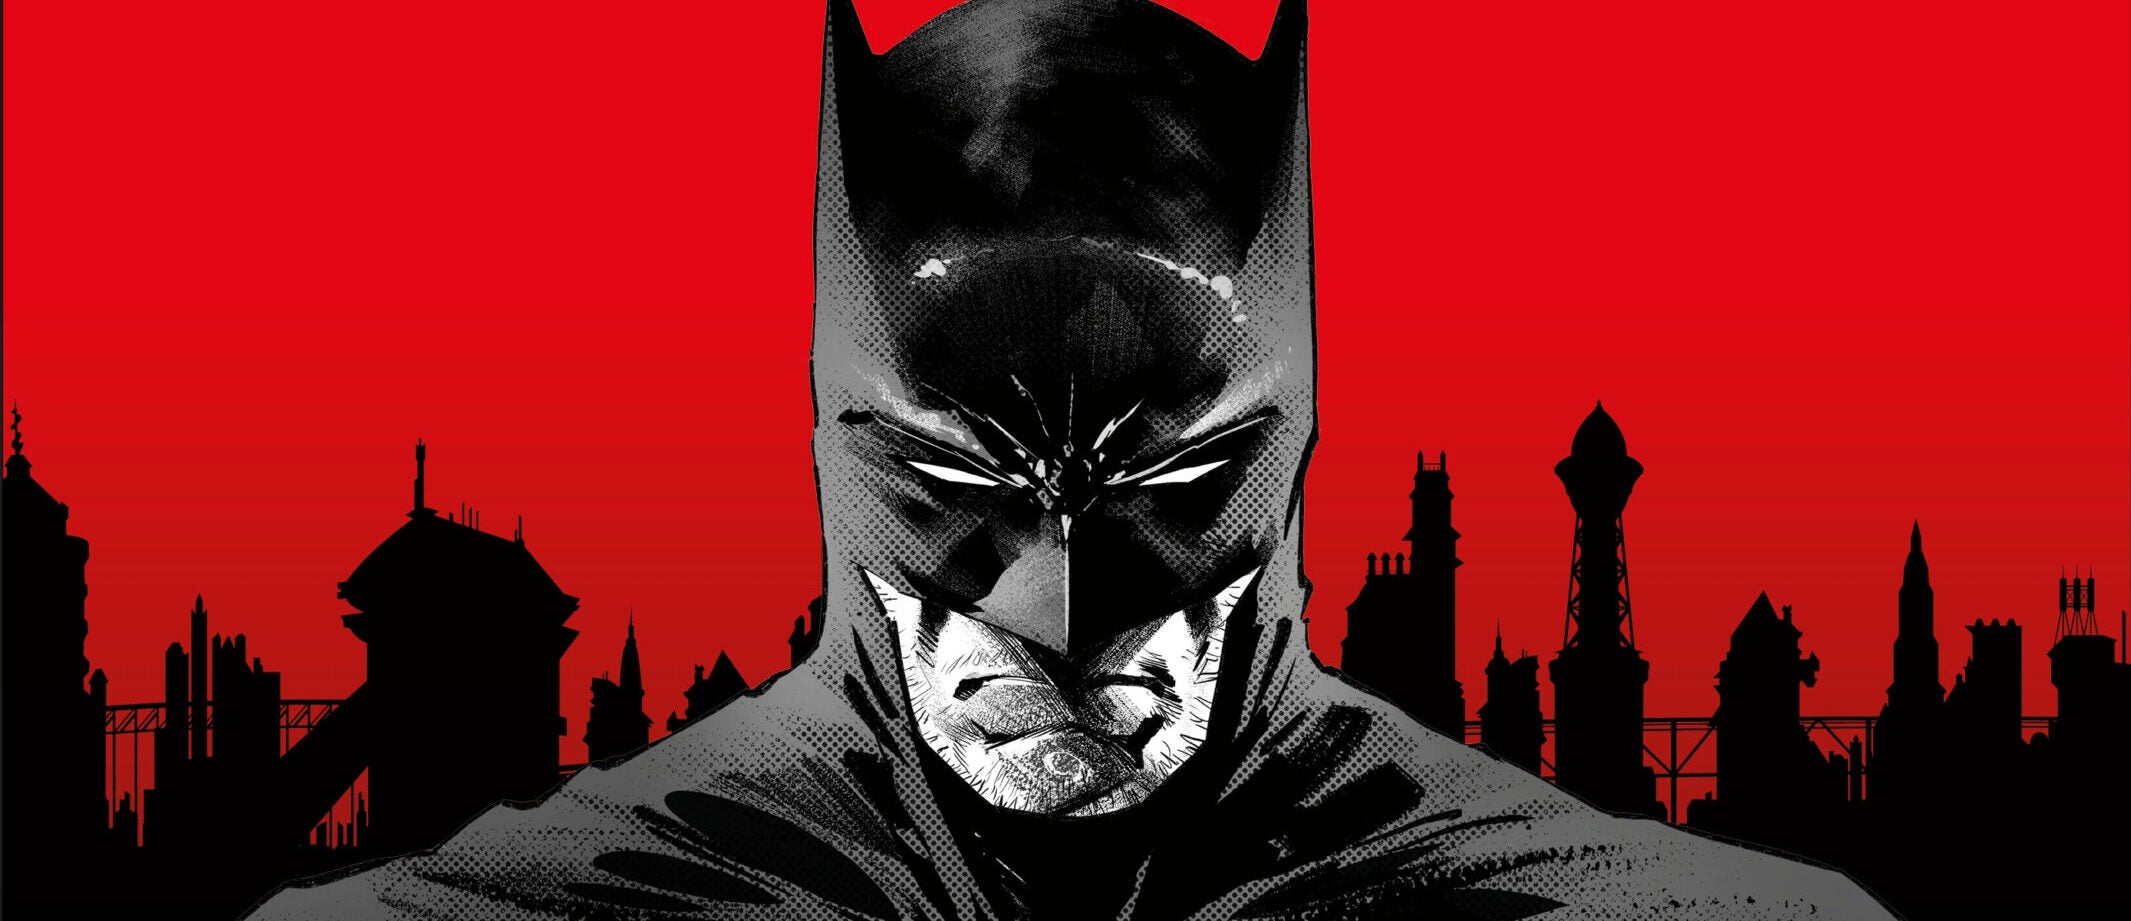 General 1920x1080 Batman DC Comics Grant Morrison  Batman comic wallpaper,  Batman cartoon, Batman illustration